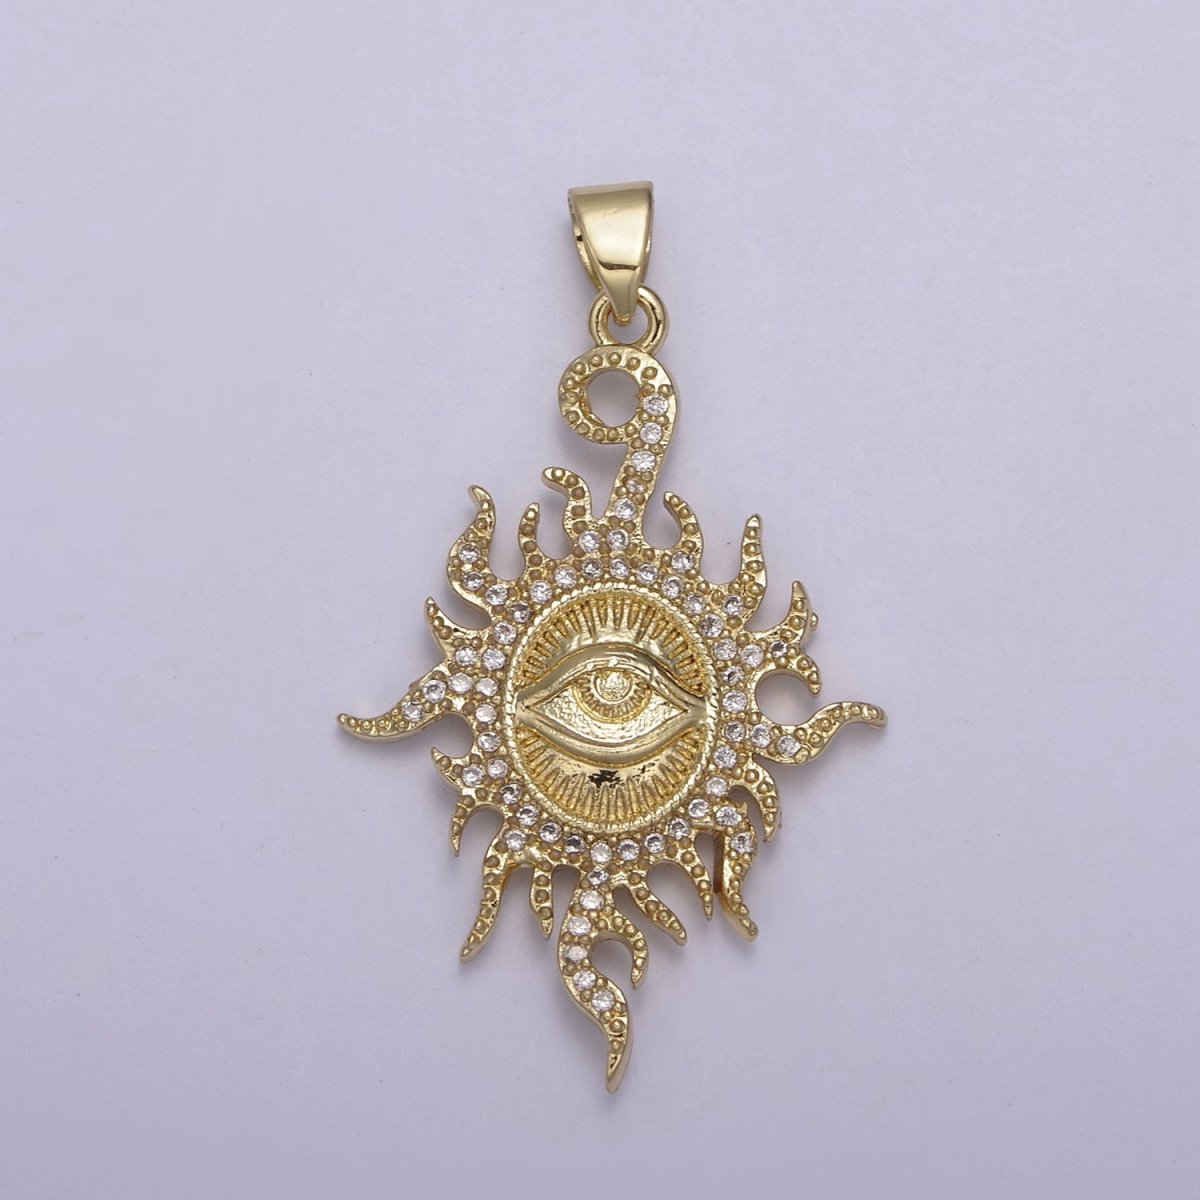 Micro Pave Illuminati Pendant All Seeing Eye of Providence Micro Pave Illuminati Charm Necklace Sun Burst Oval Medallion H-869 - DLUXCA